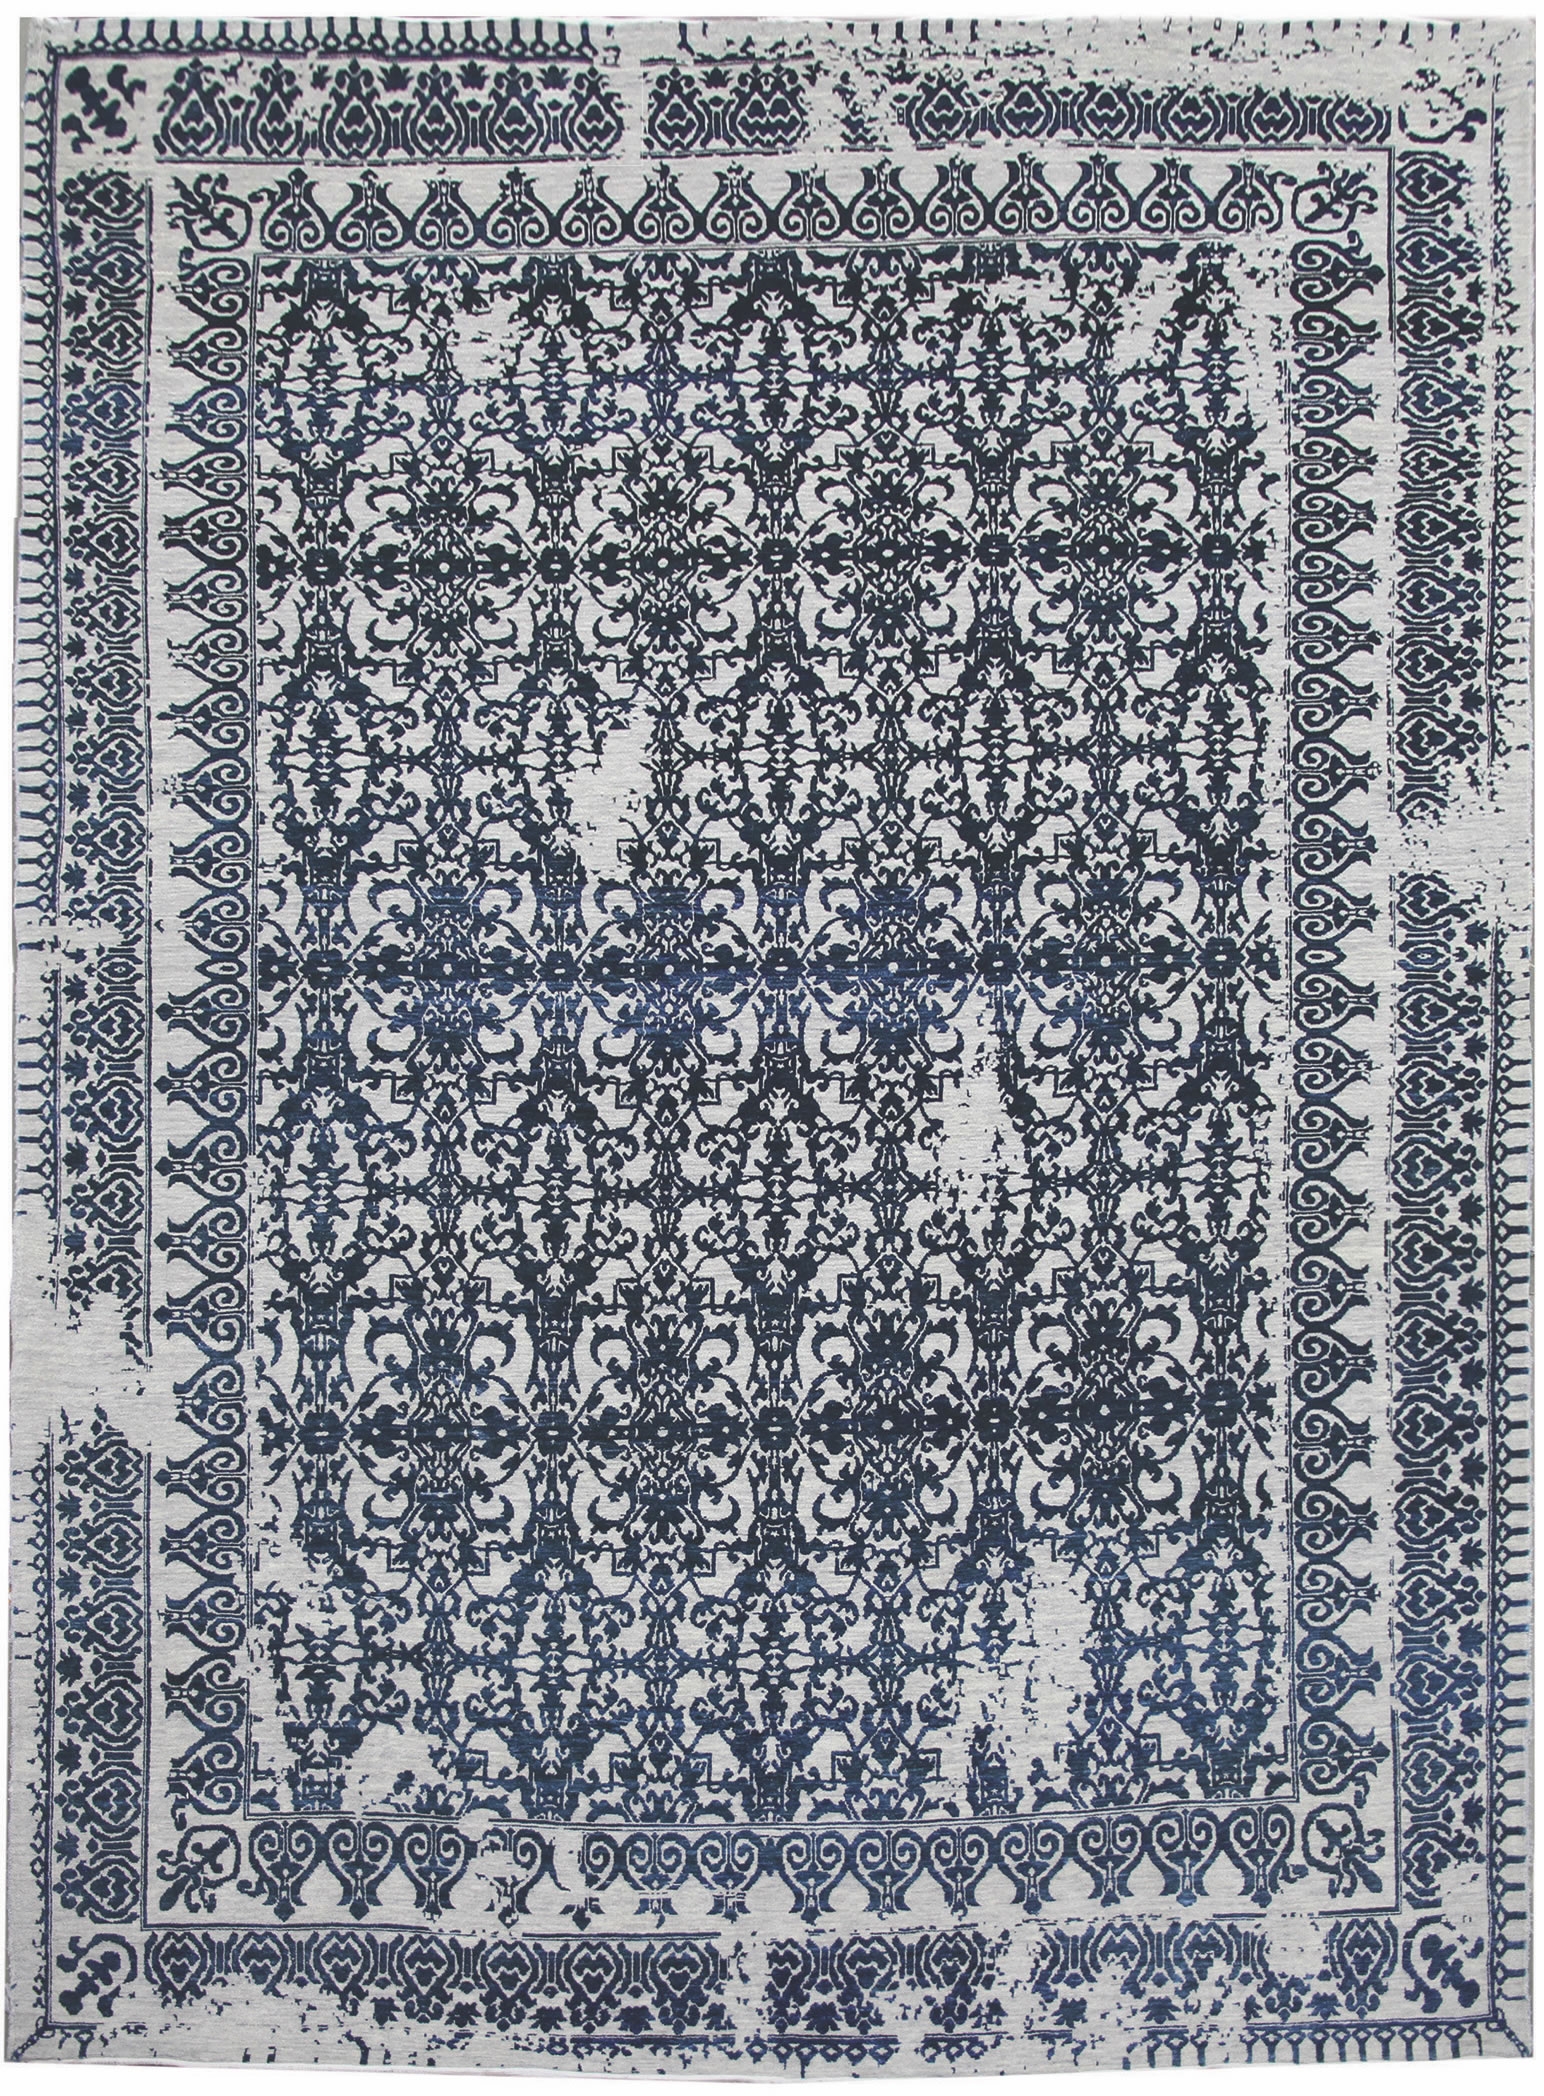 Ručne viazaný kusový koberec Diamond DC-JK 7 Silver / denim - 365x550 cm Diamond Carpets koberce 